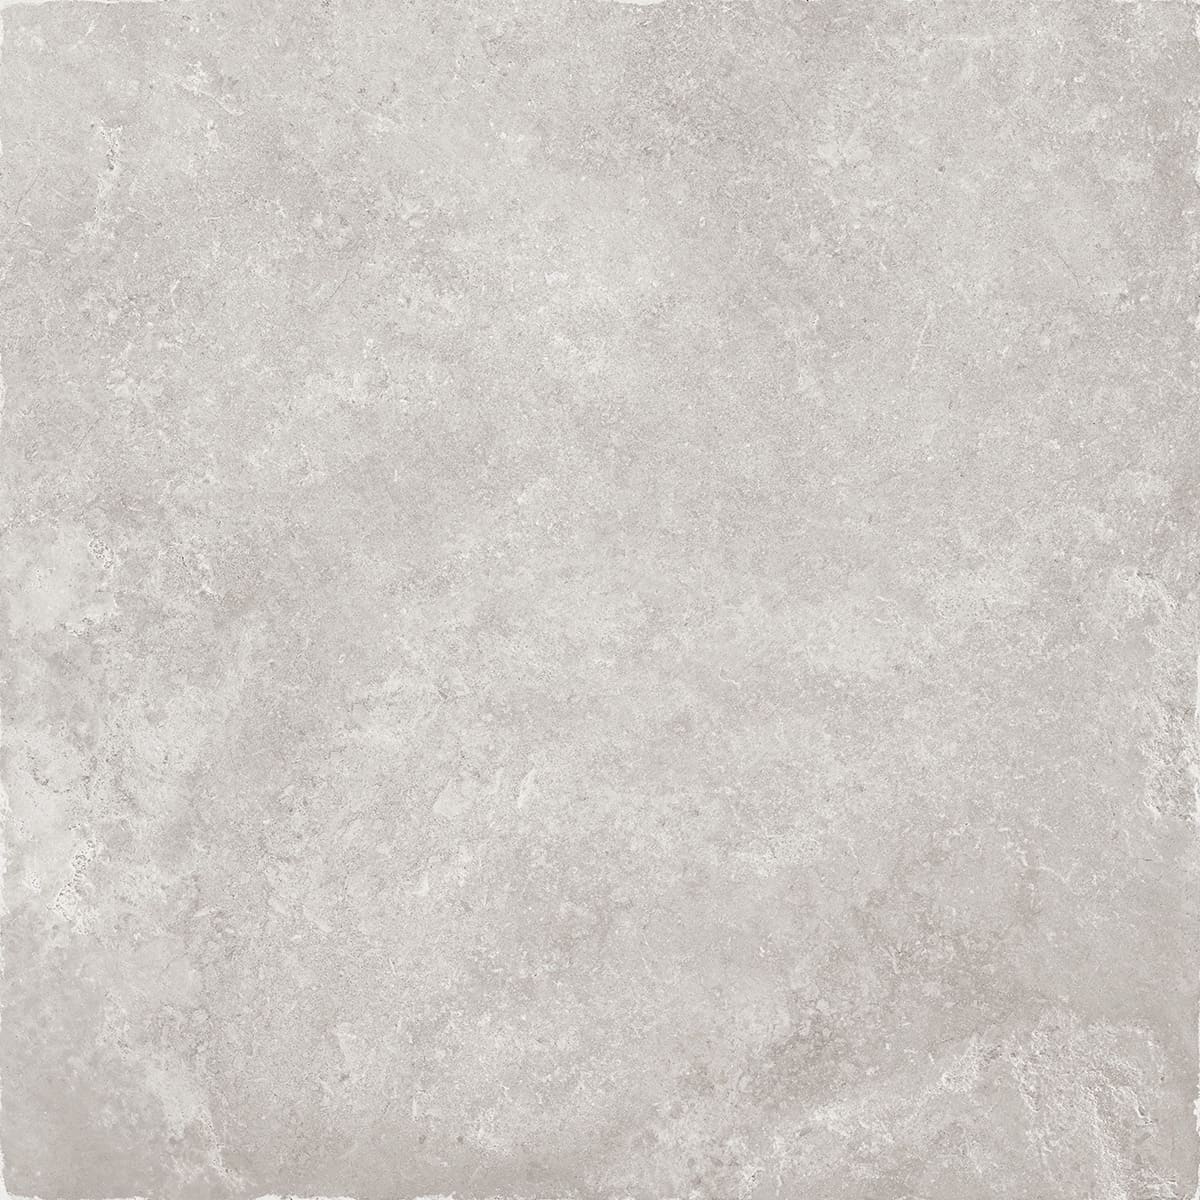 Толстый керамогранит 20мм La Fabbrica Chianca Otranto Nat Ret R11 184044, цвет серый, поверхность натуральная противоскользящая, квадрат, 1000x1000